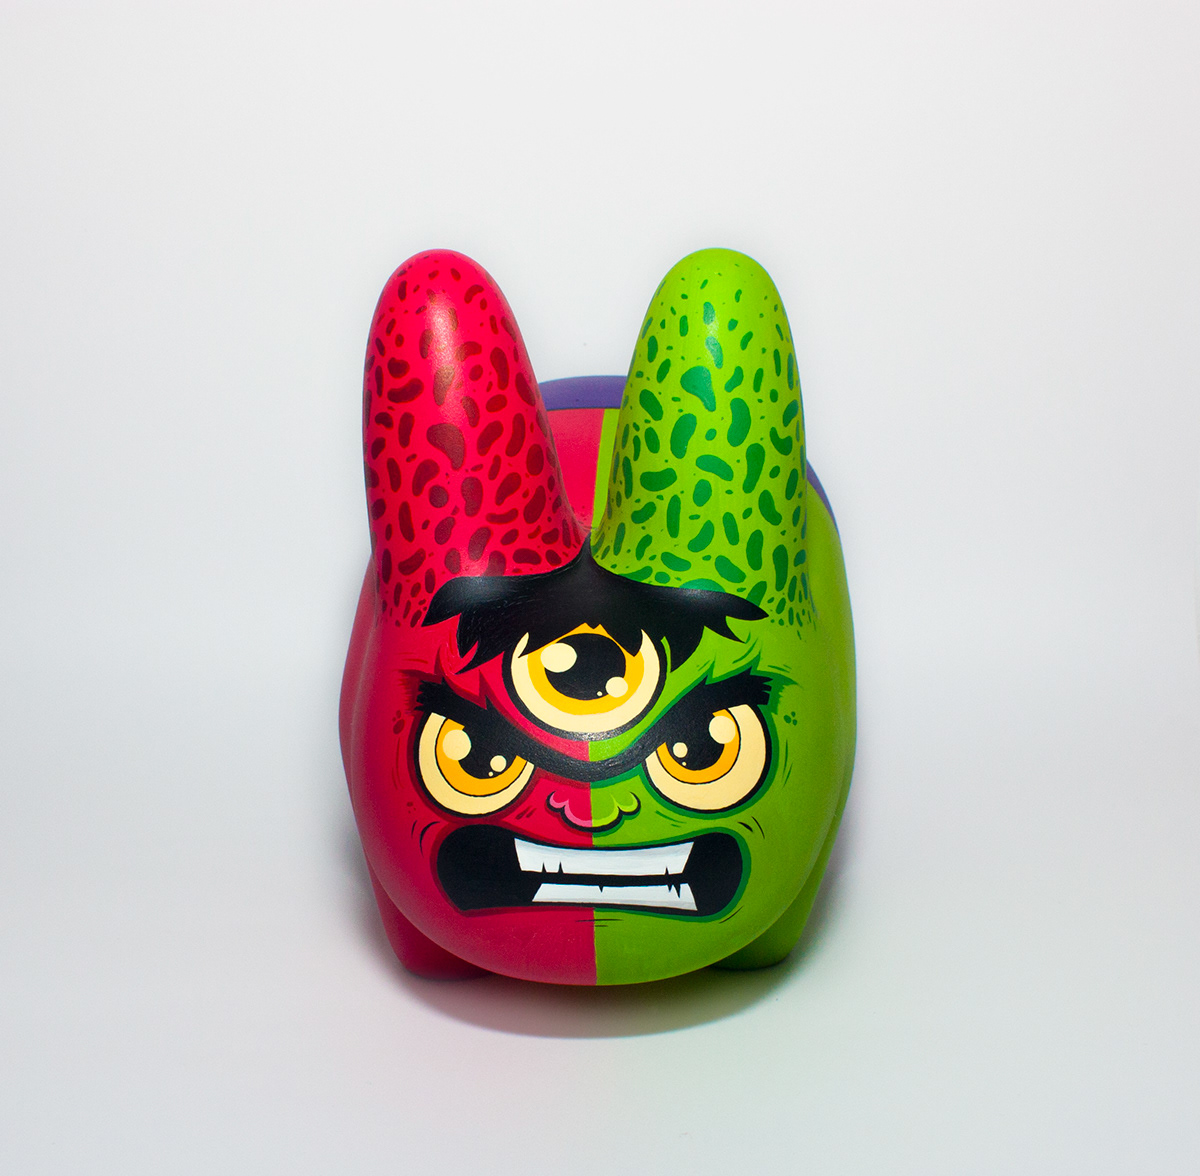 Wuzone Custom Dunny Labbit Munny Kidrobot arttoy vinyltoy toy vinyl DIY geek Hulk Avengers commission